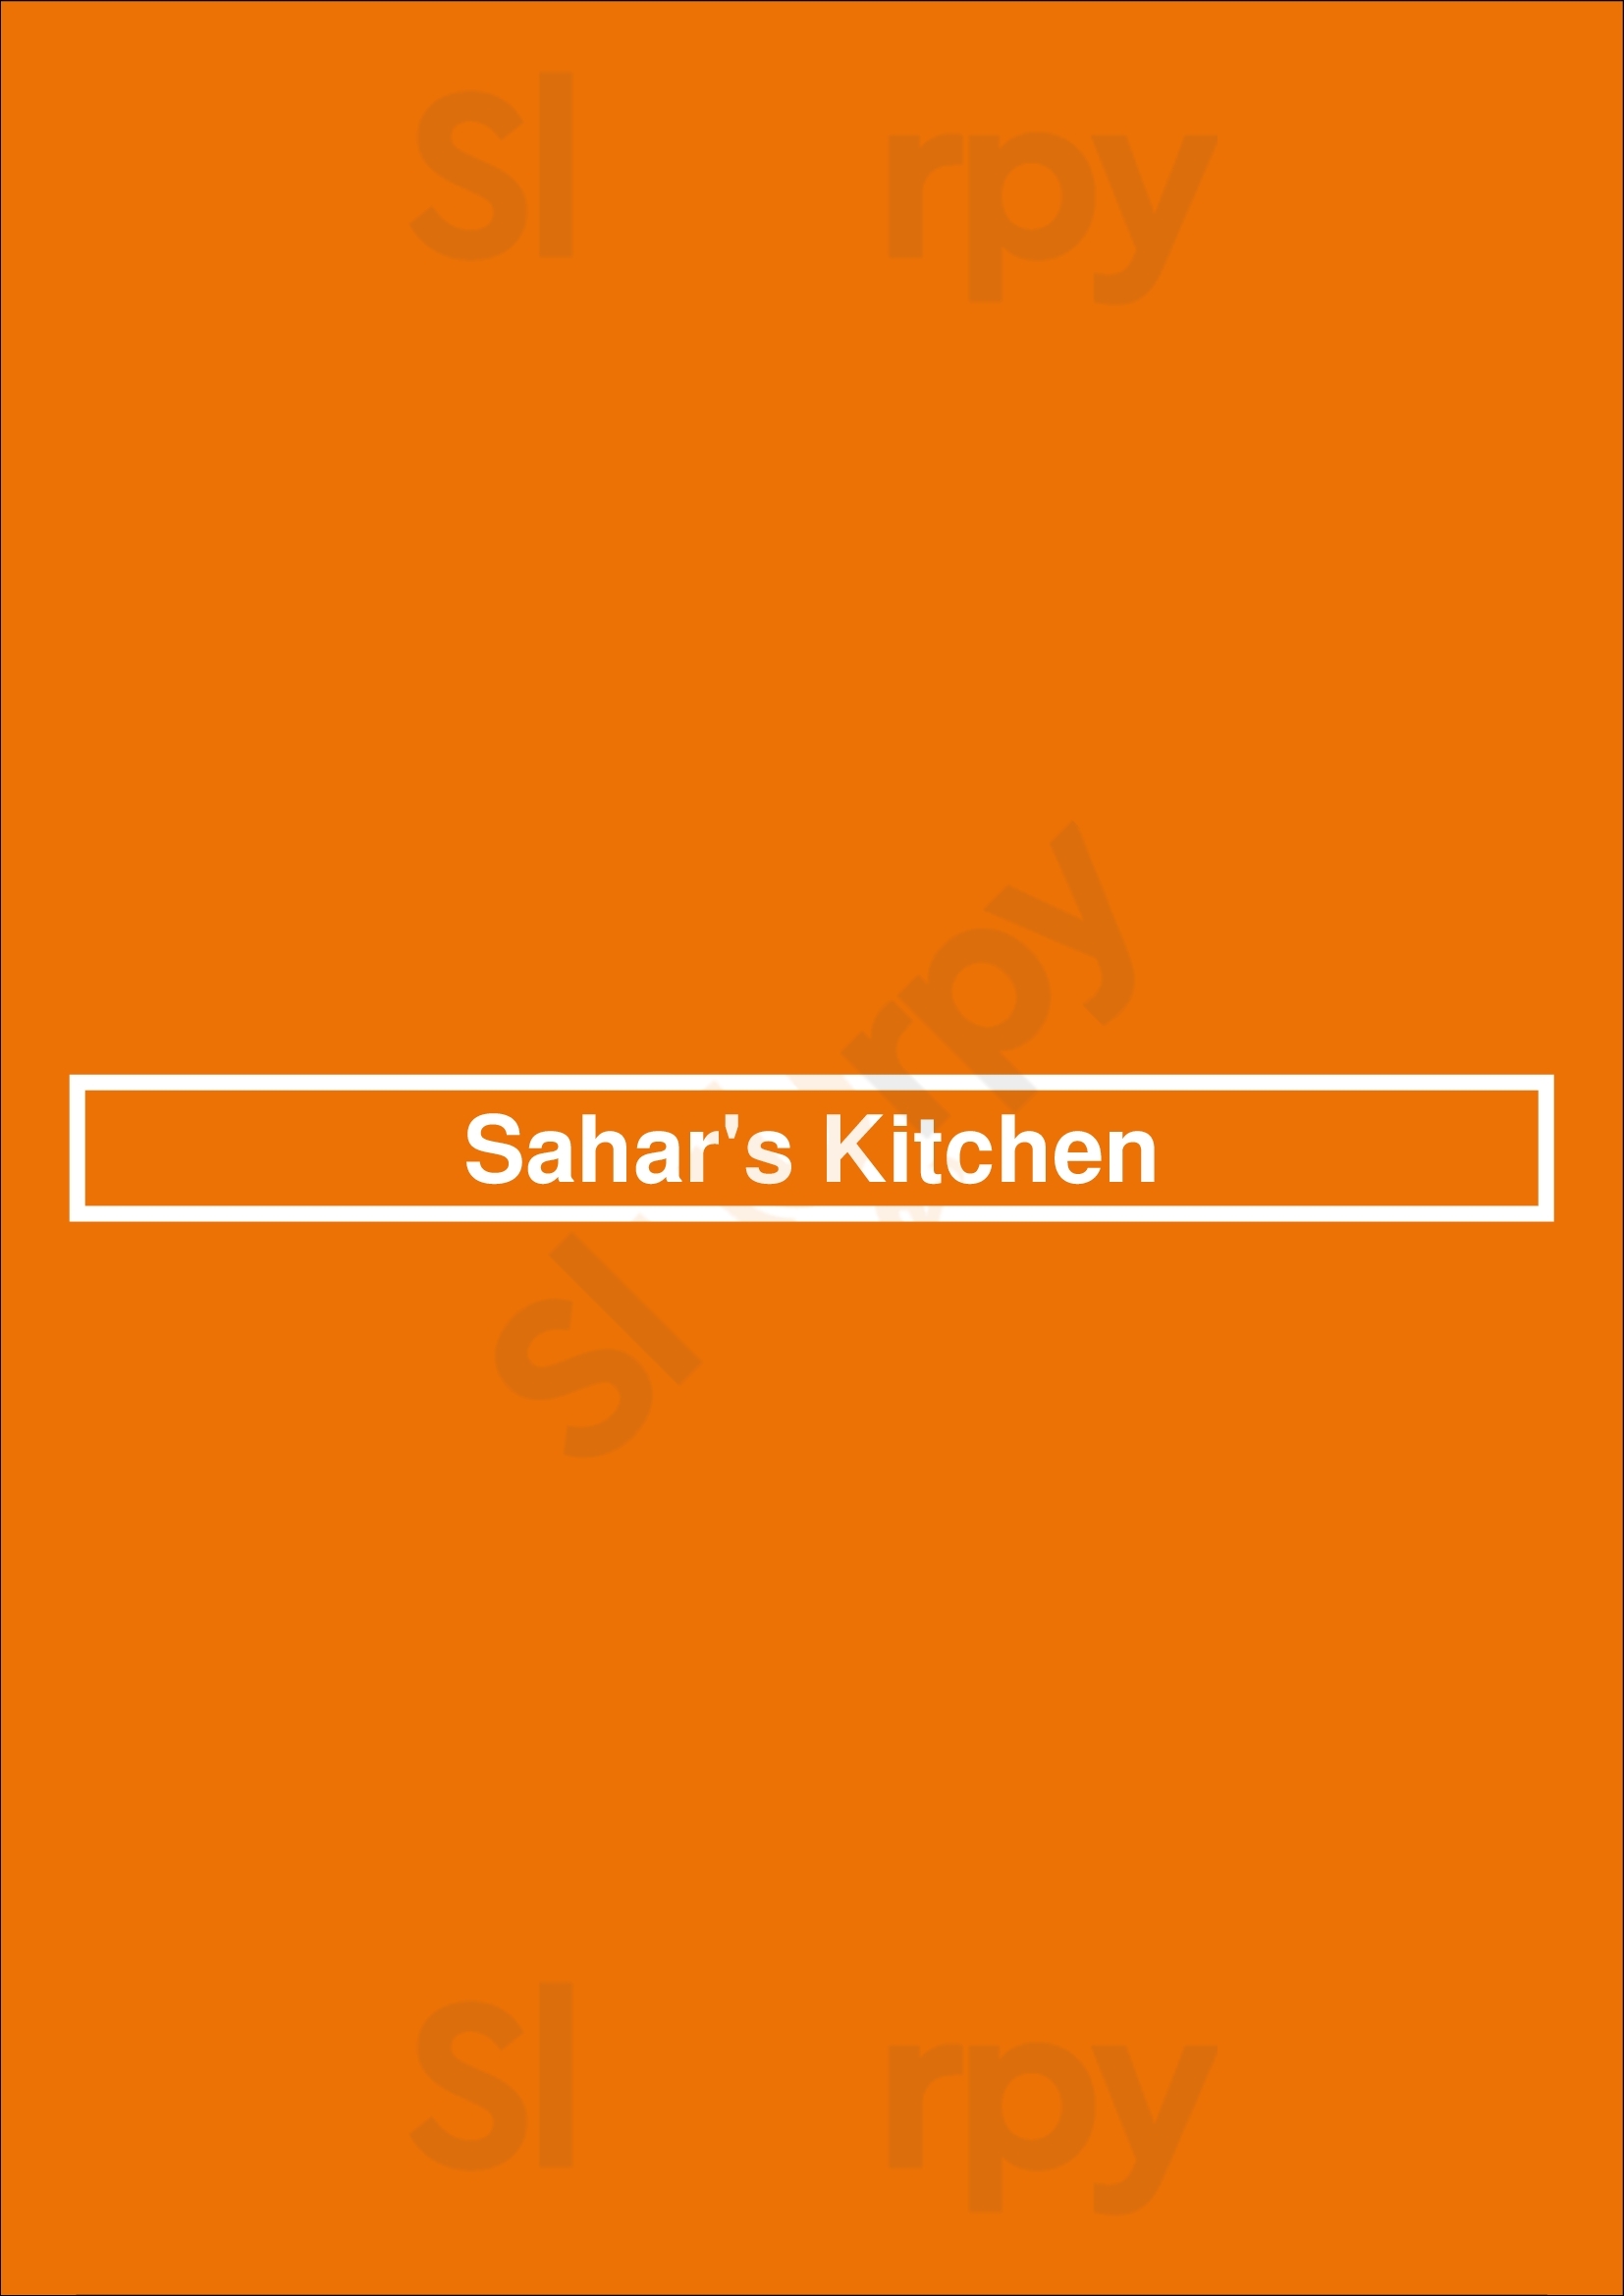 Sahar's Kitchen Kitchener Menu - 1